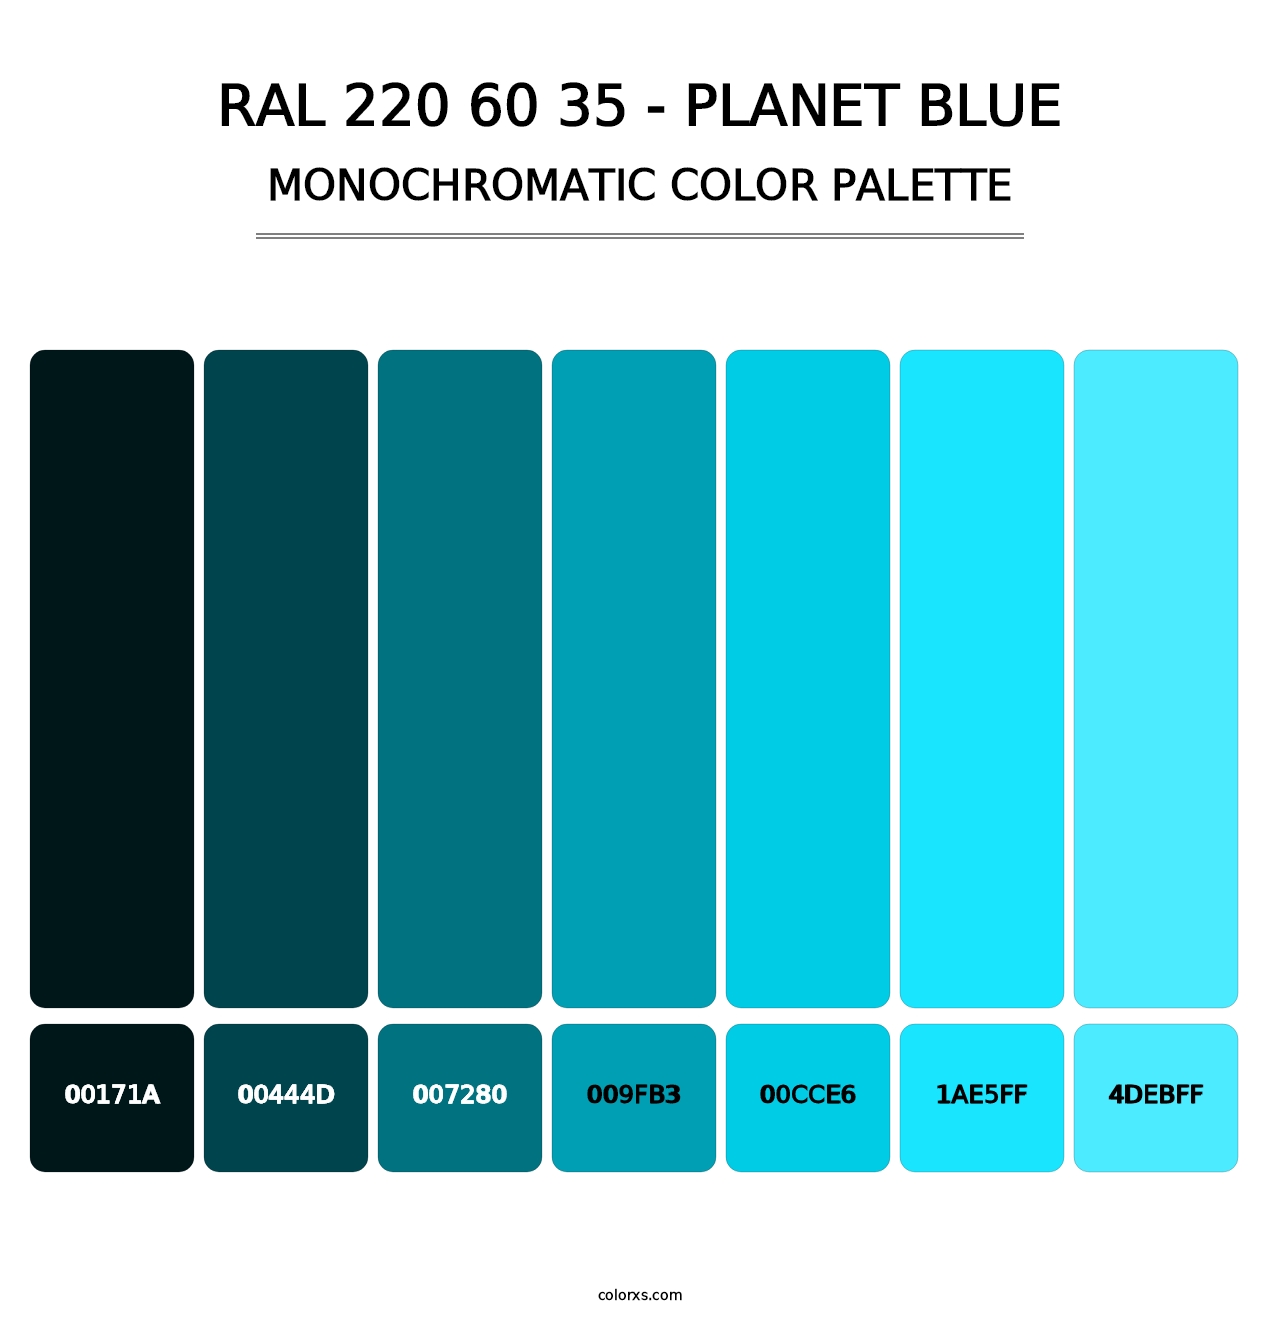 RAL 220 60 35 - Planet Blue - Monochromatic Color Palette